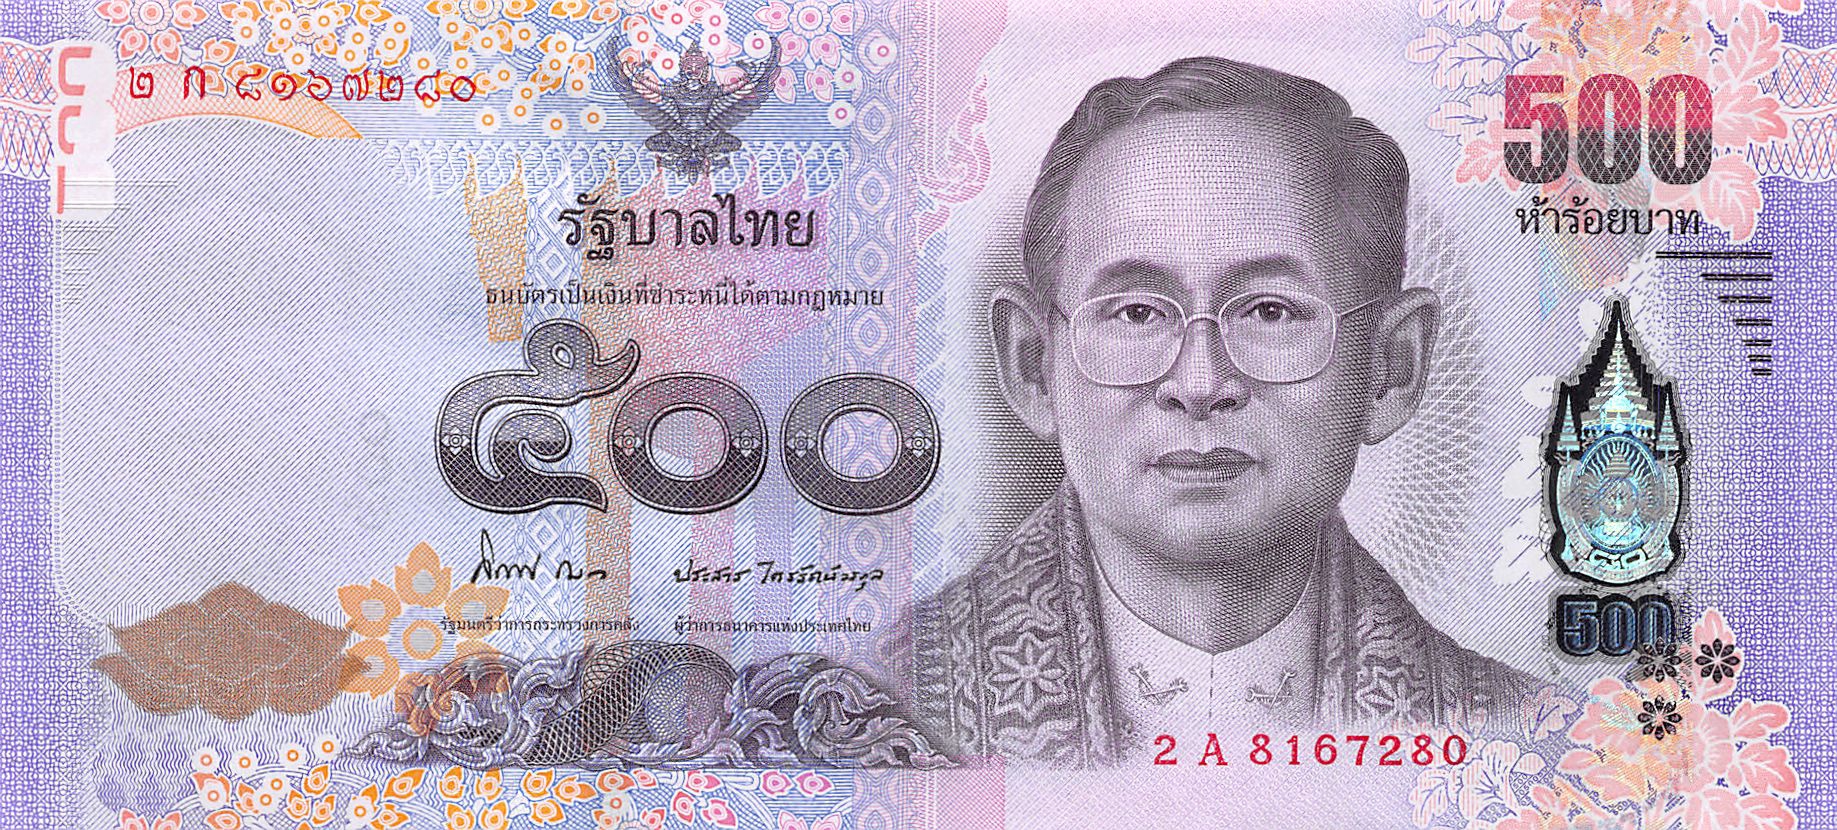 Thailand 500 Baht 2014 Unc Thapn121a1 Thailand